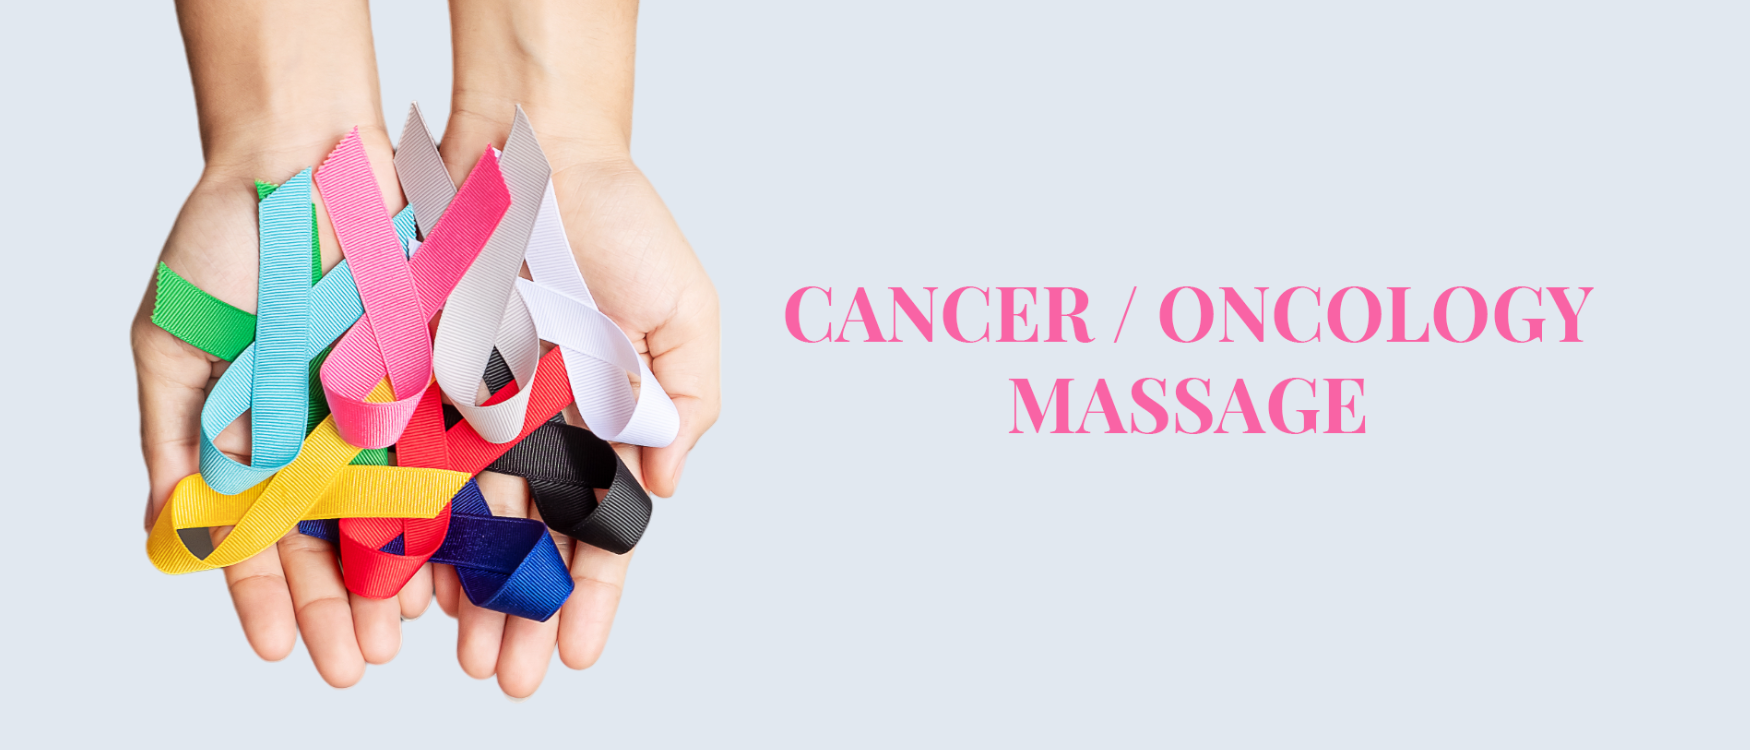 Cancer massage ribbons banner image